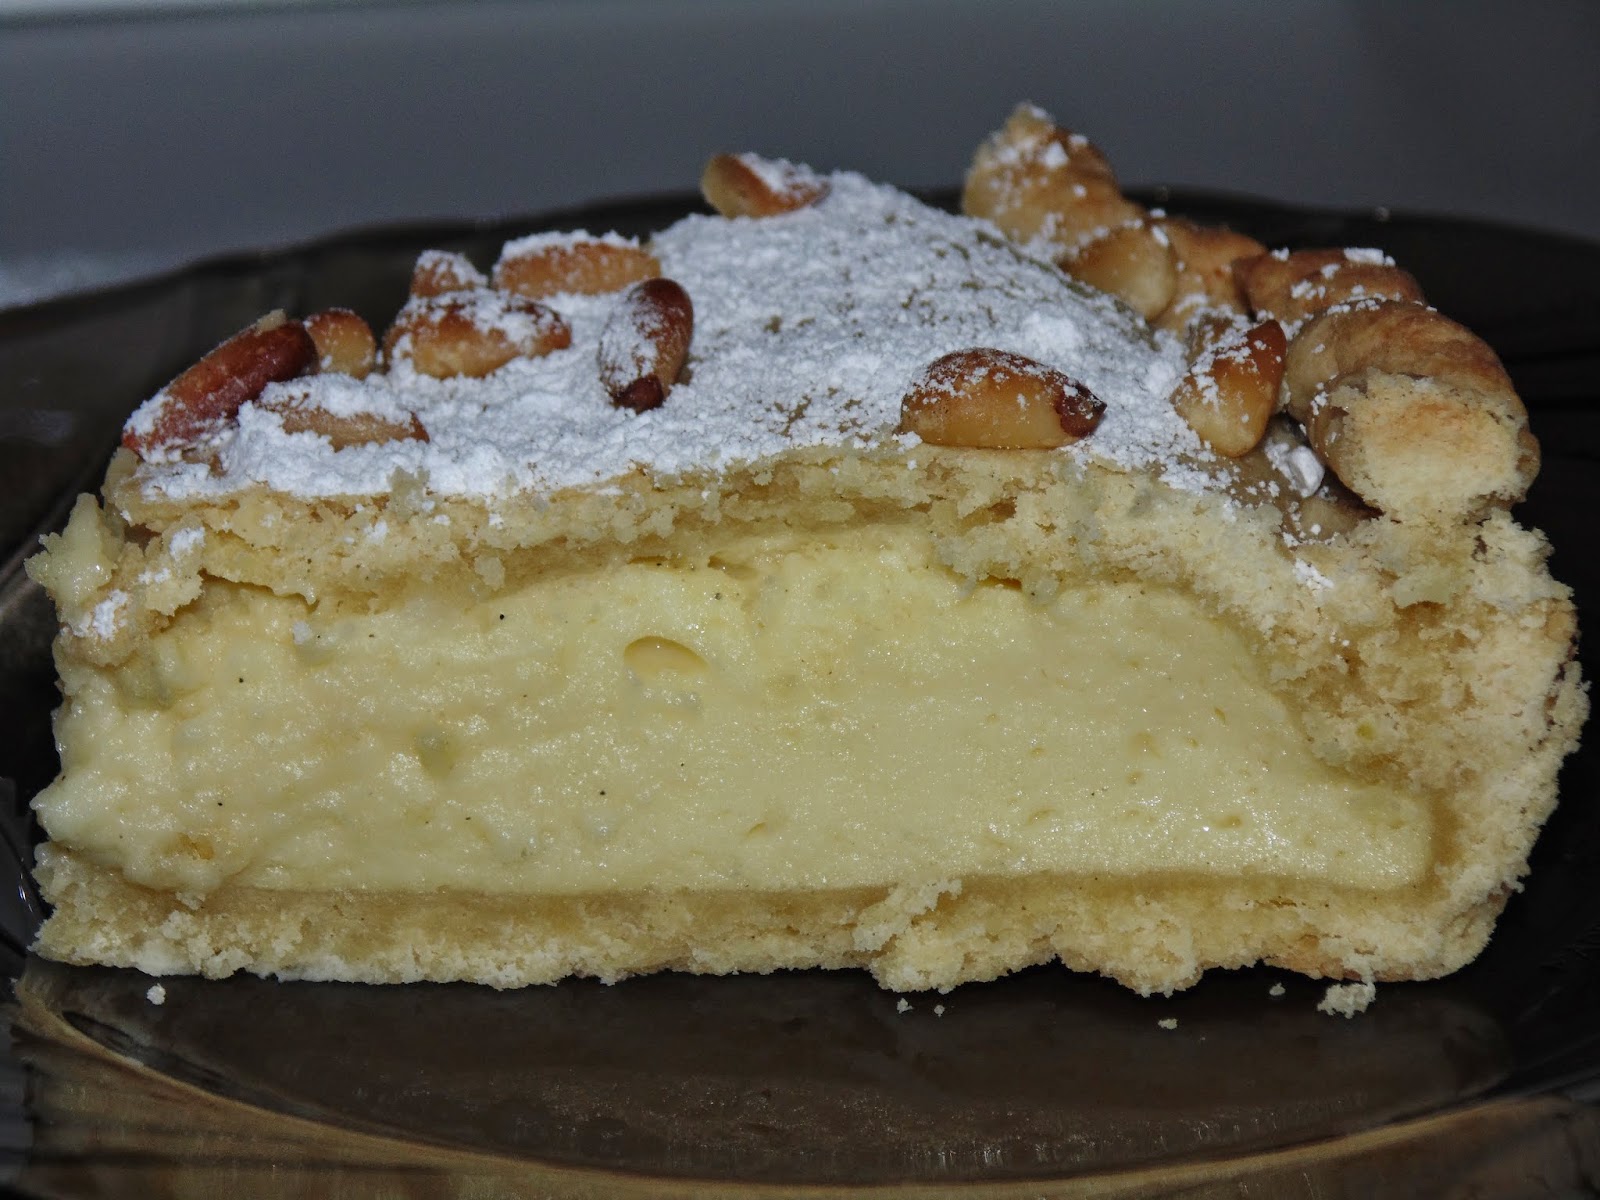 Torta della nonna - recipe (including photos) | Life in Luxembourg